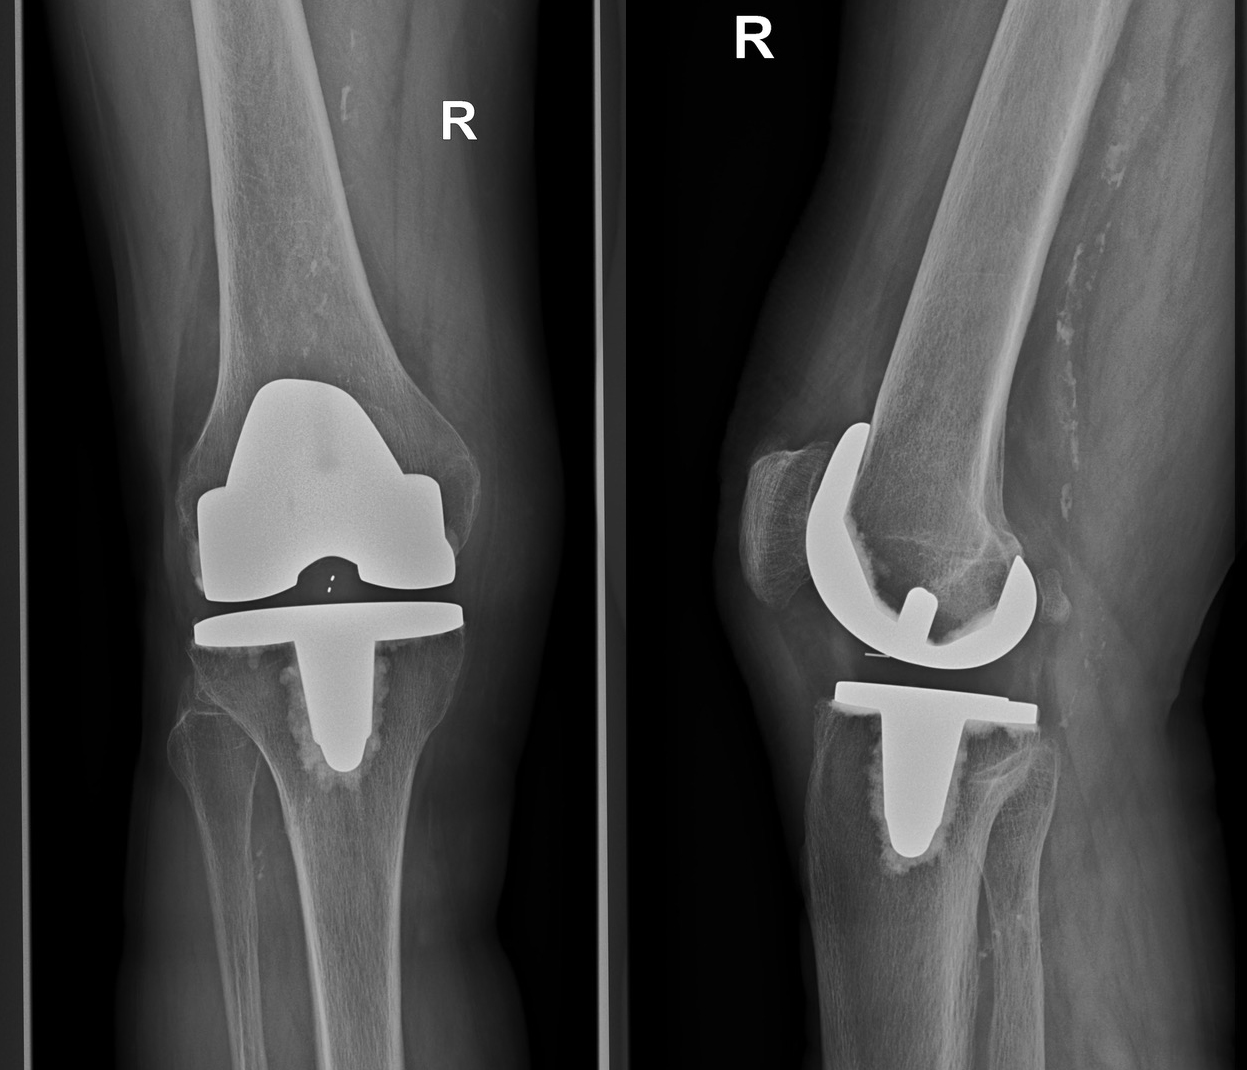 Röntgenbild einer Knieendoprothese